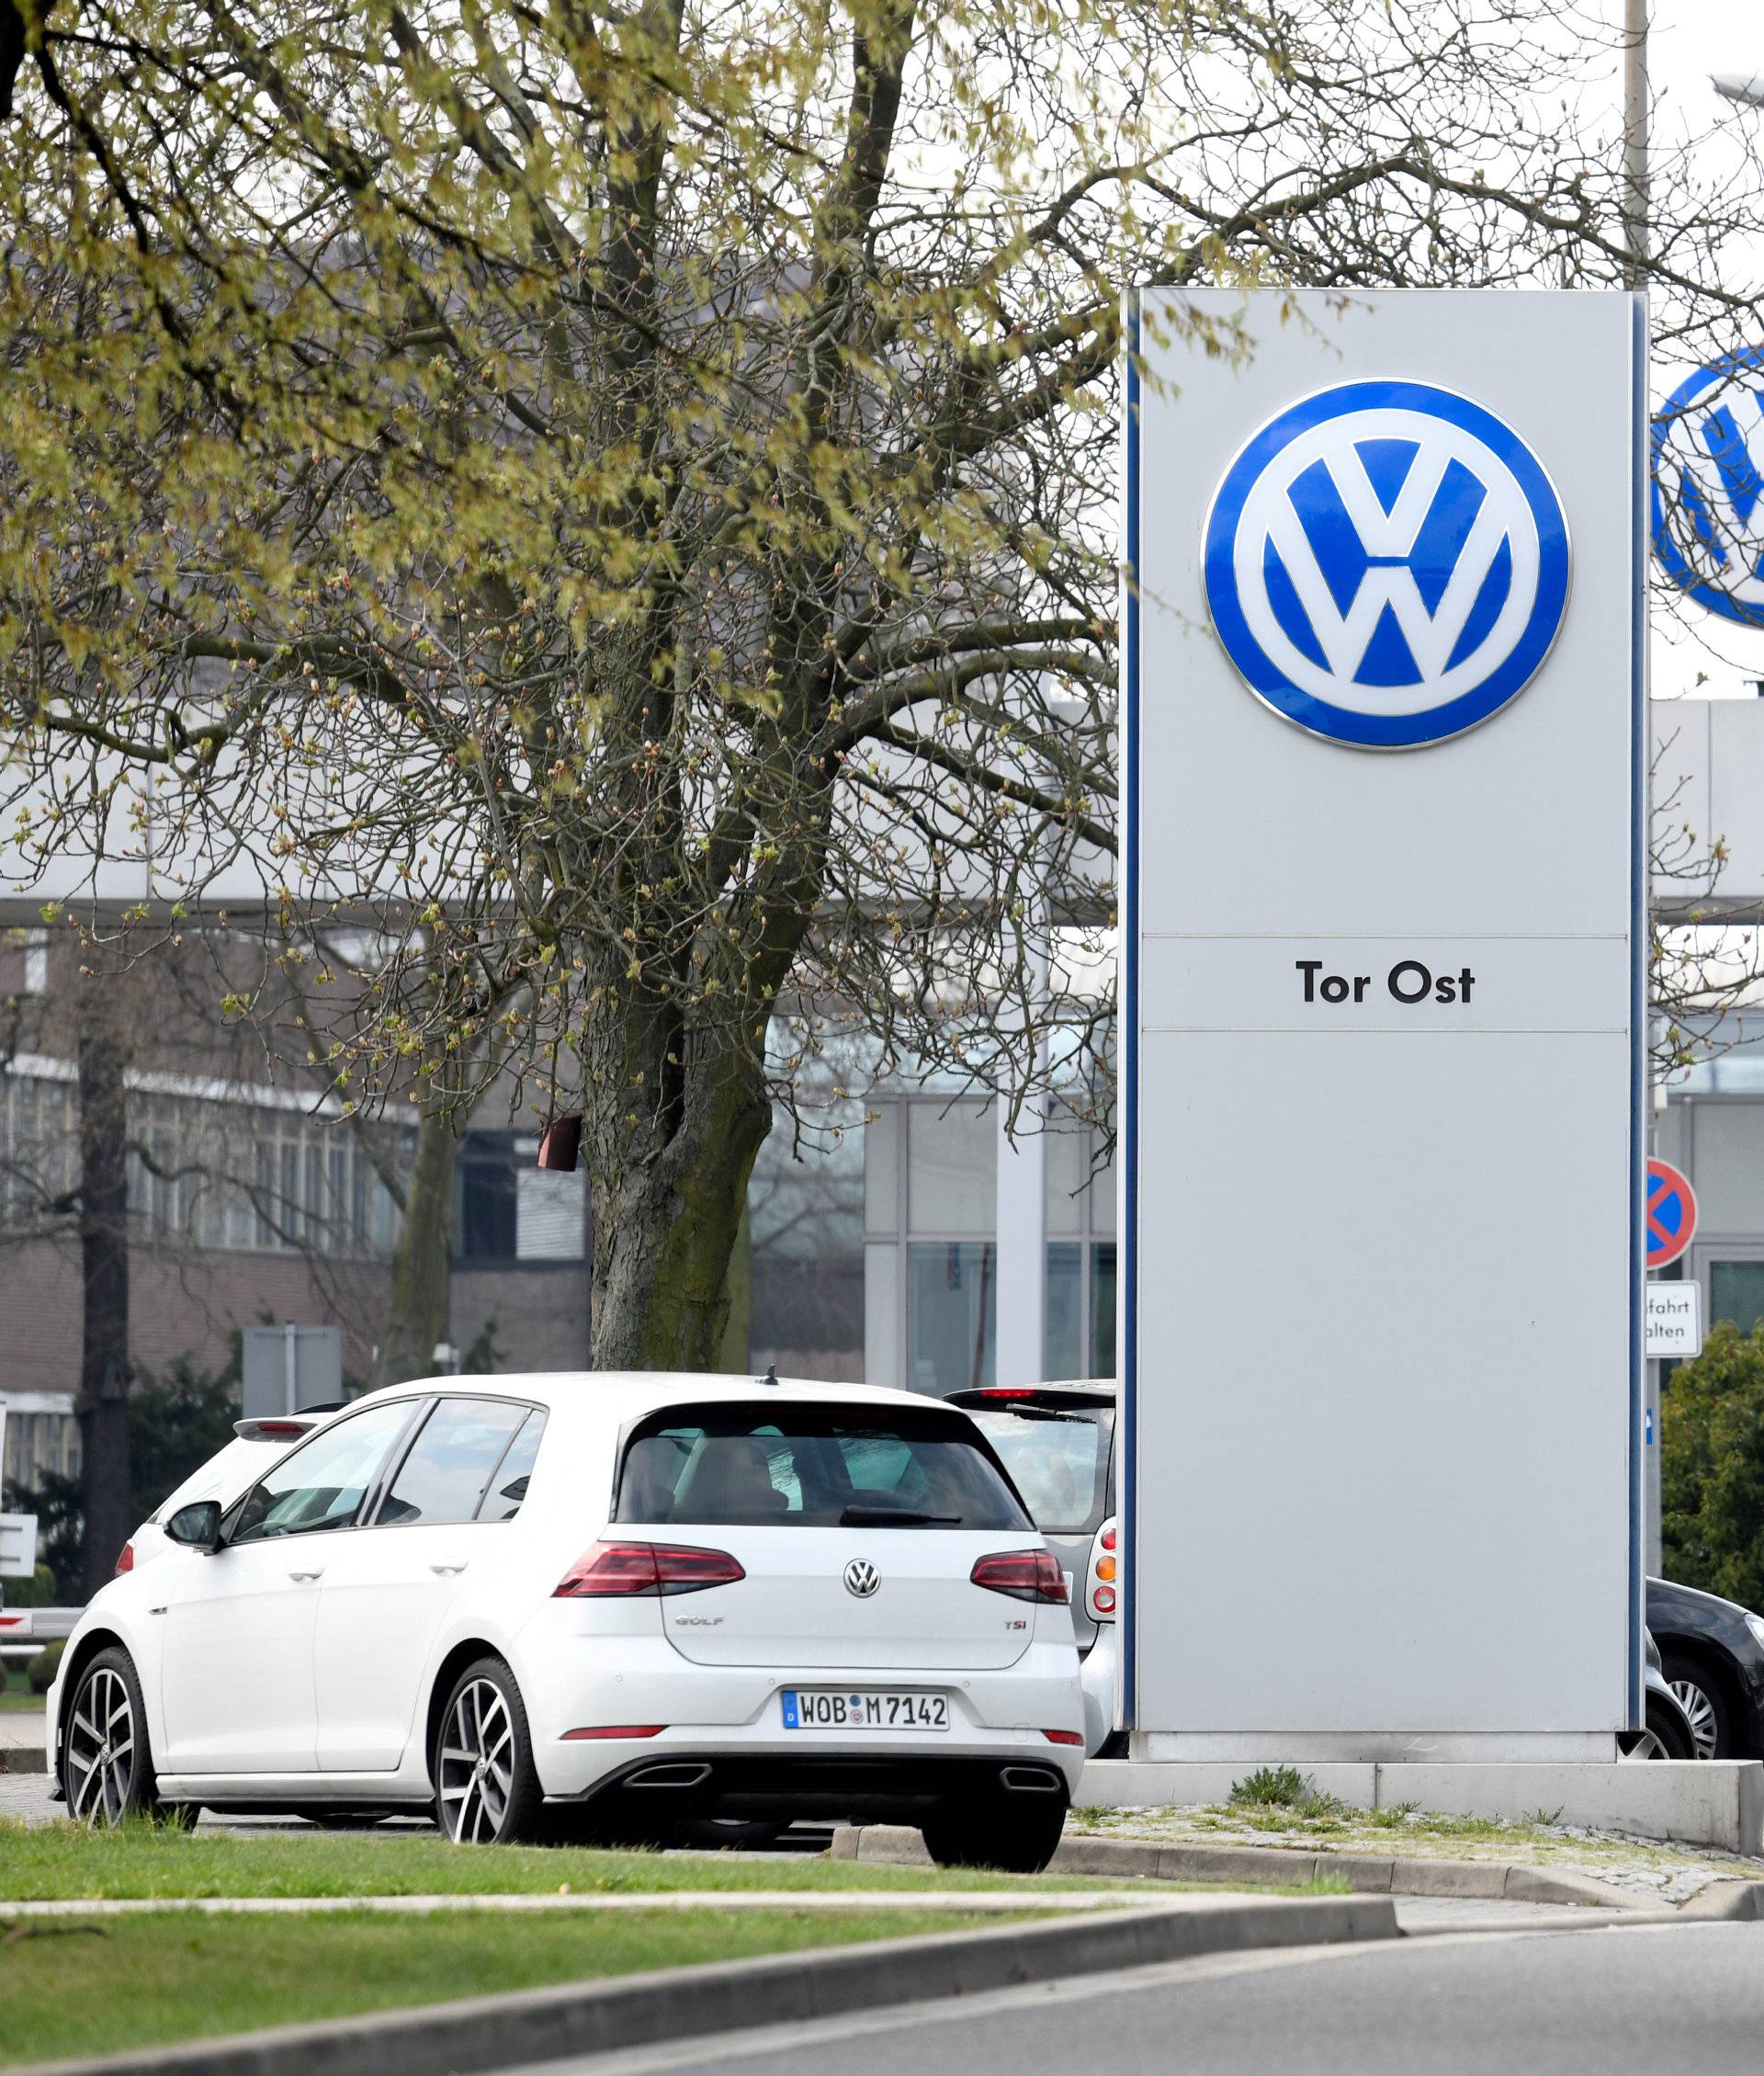 Volkswagen logo is seen at their plant in Wolfsburg